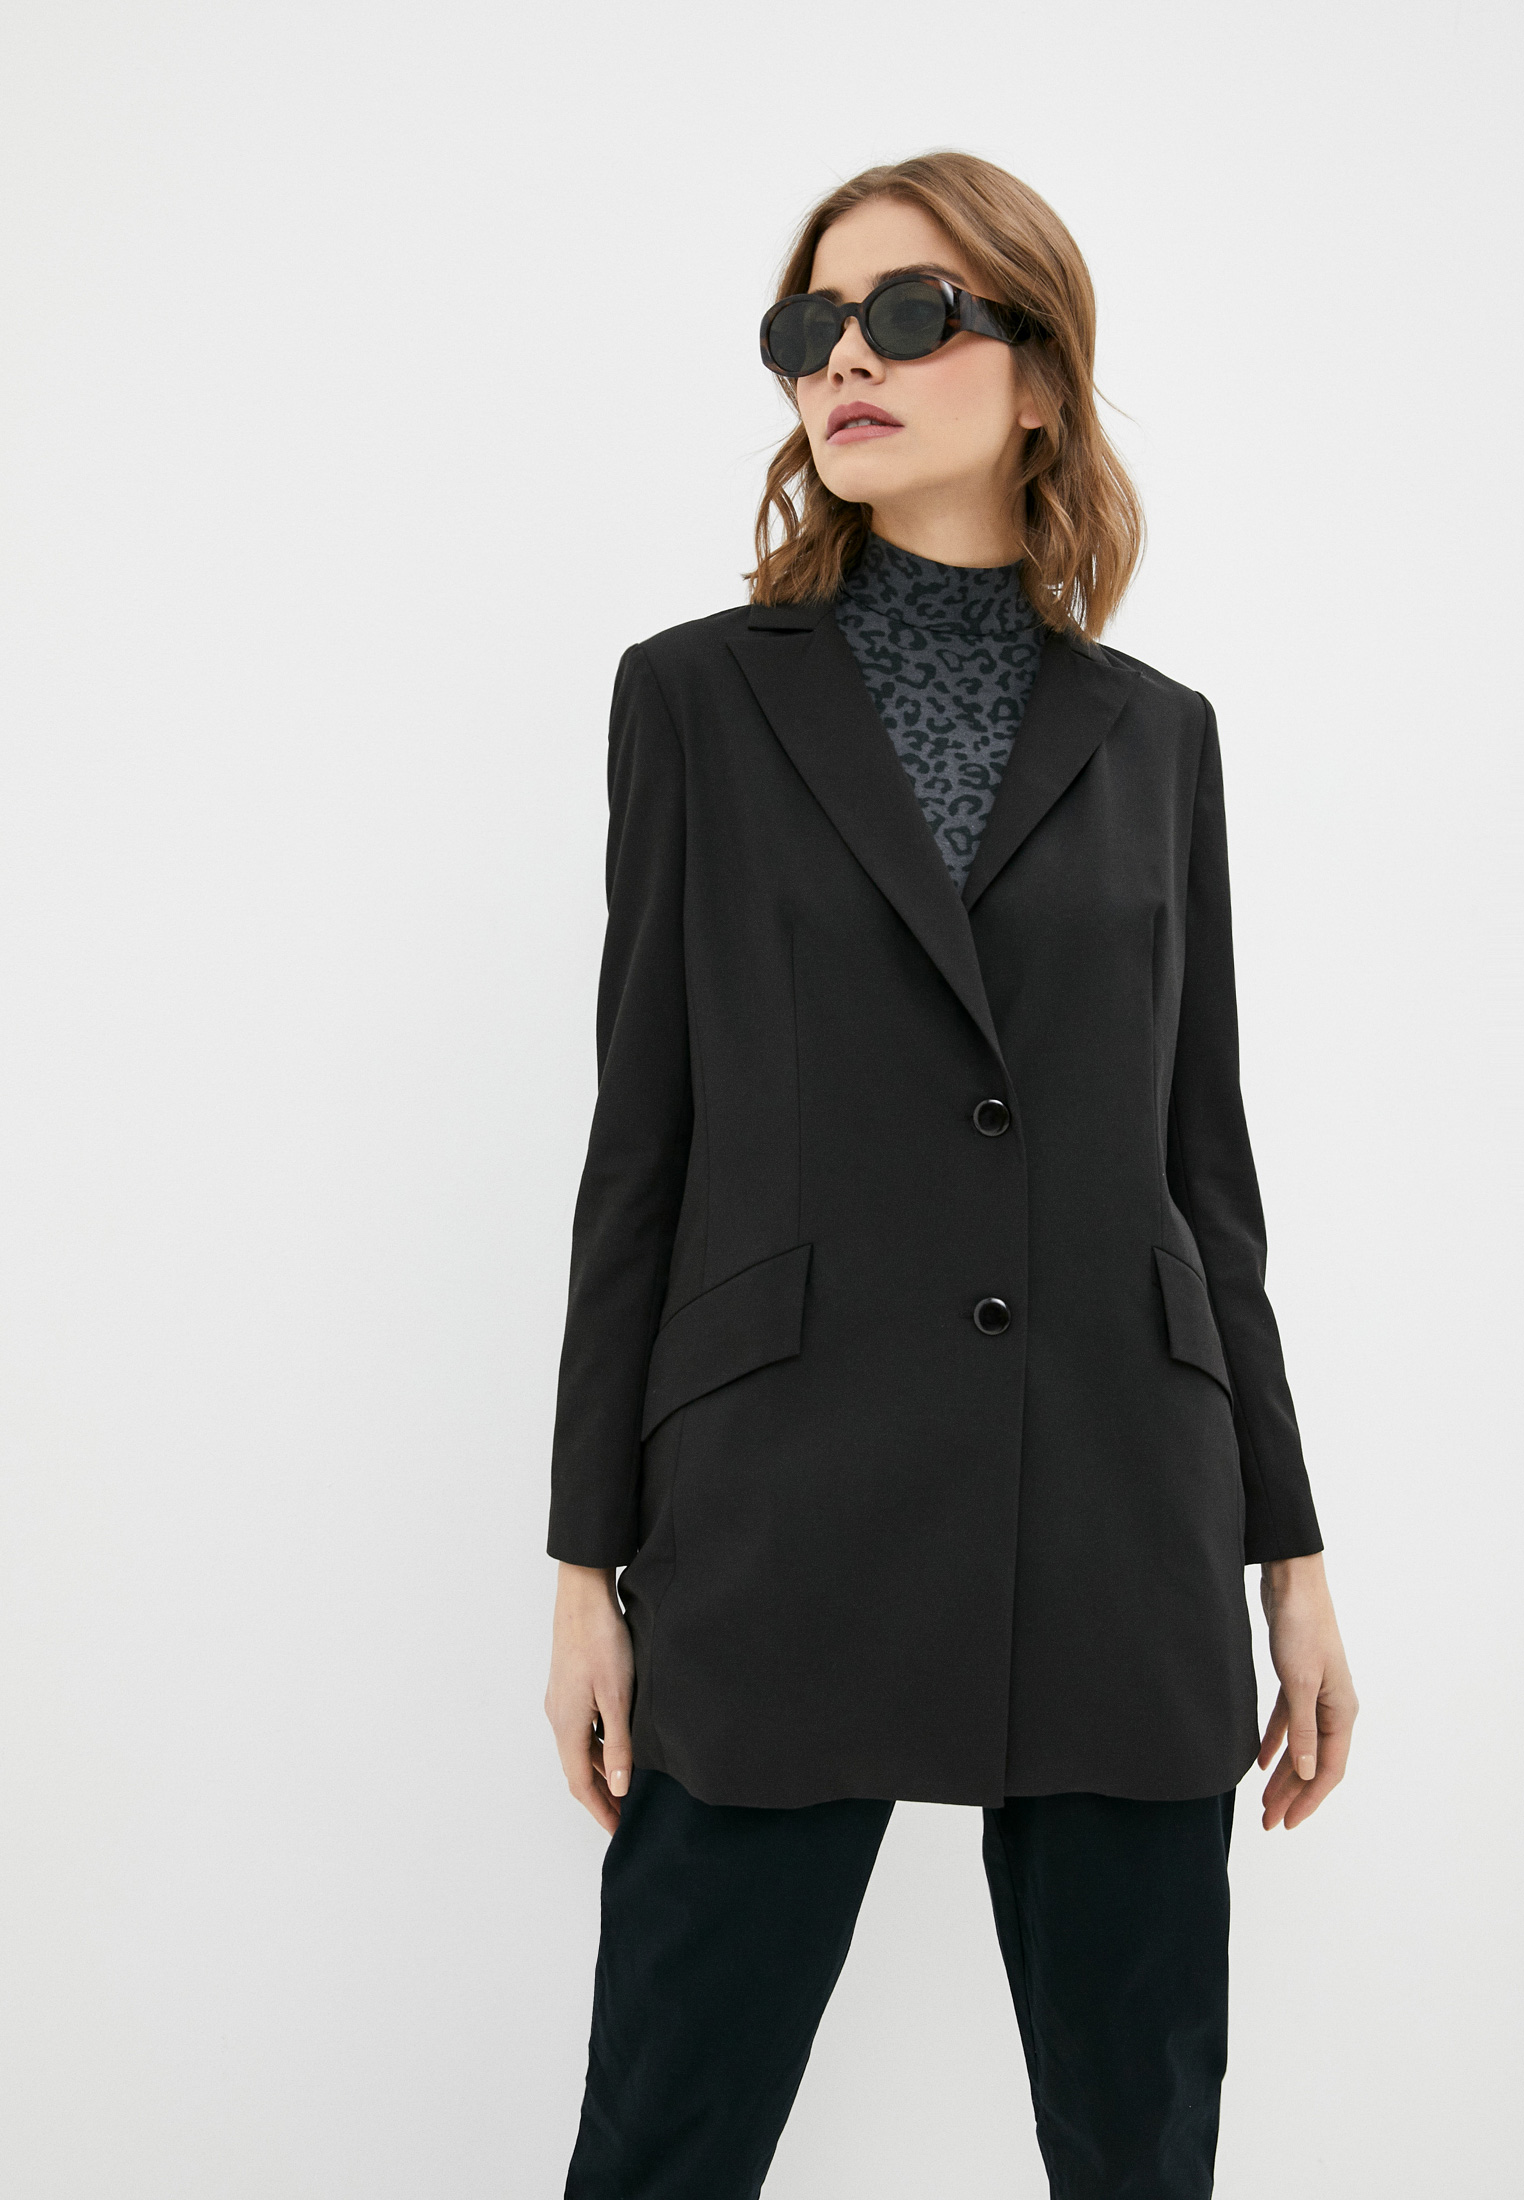 Пиджак Bazzaro, цвет: черный, MP002XW03T6K — купить в интернет-магазине Lamoda